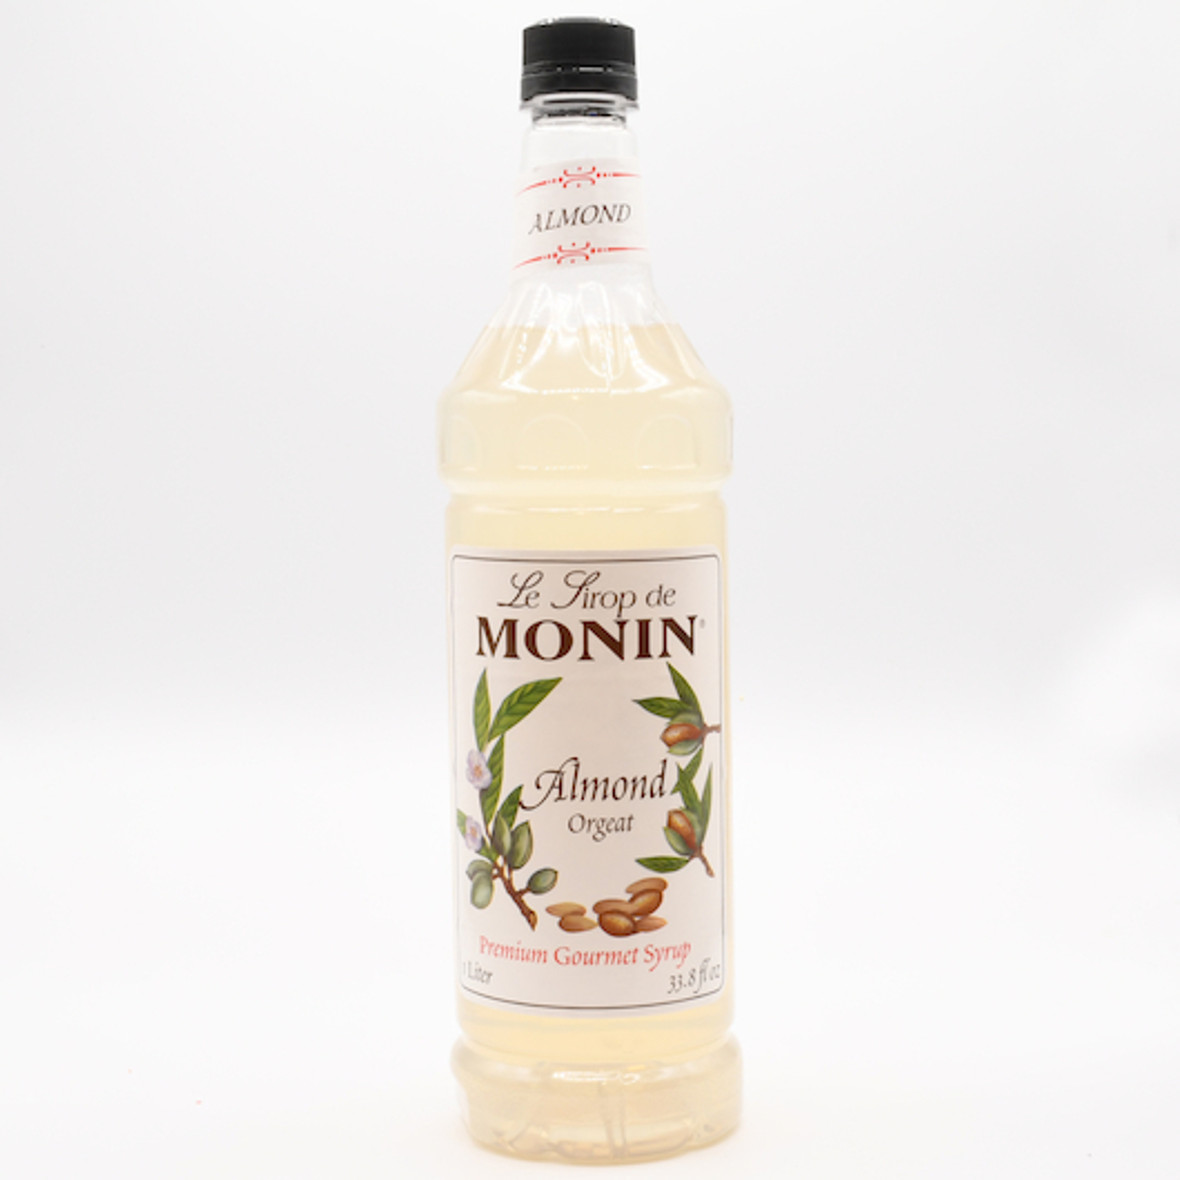 Monin Flavor Almond, 1 Liter, 4 Per Case